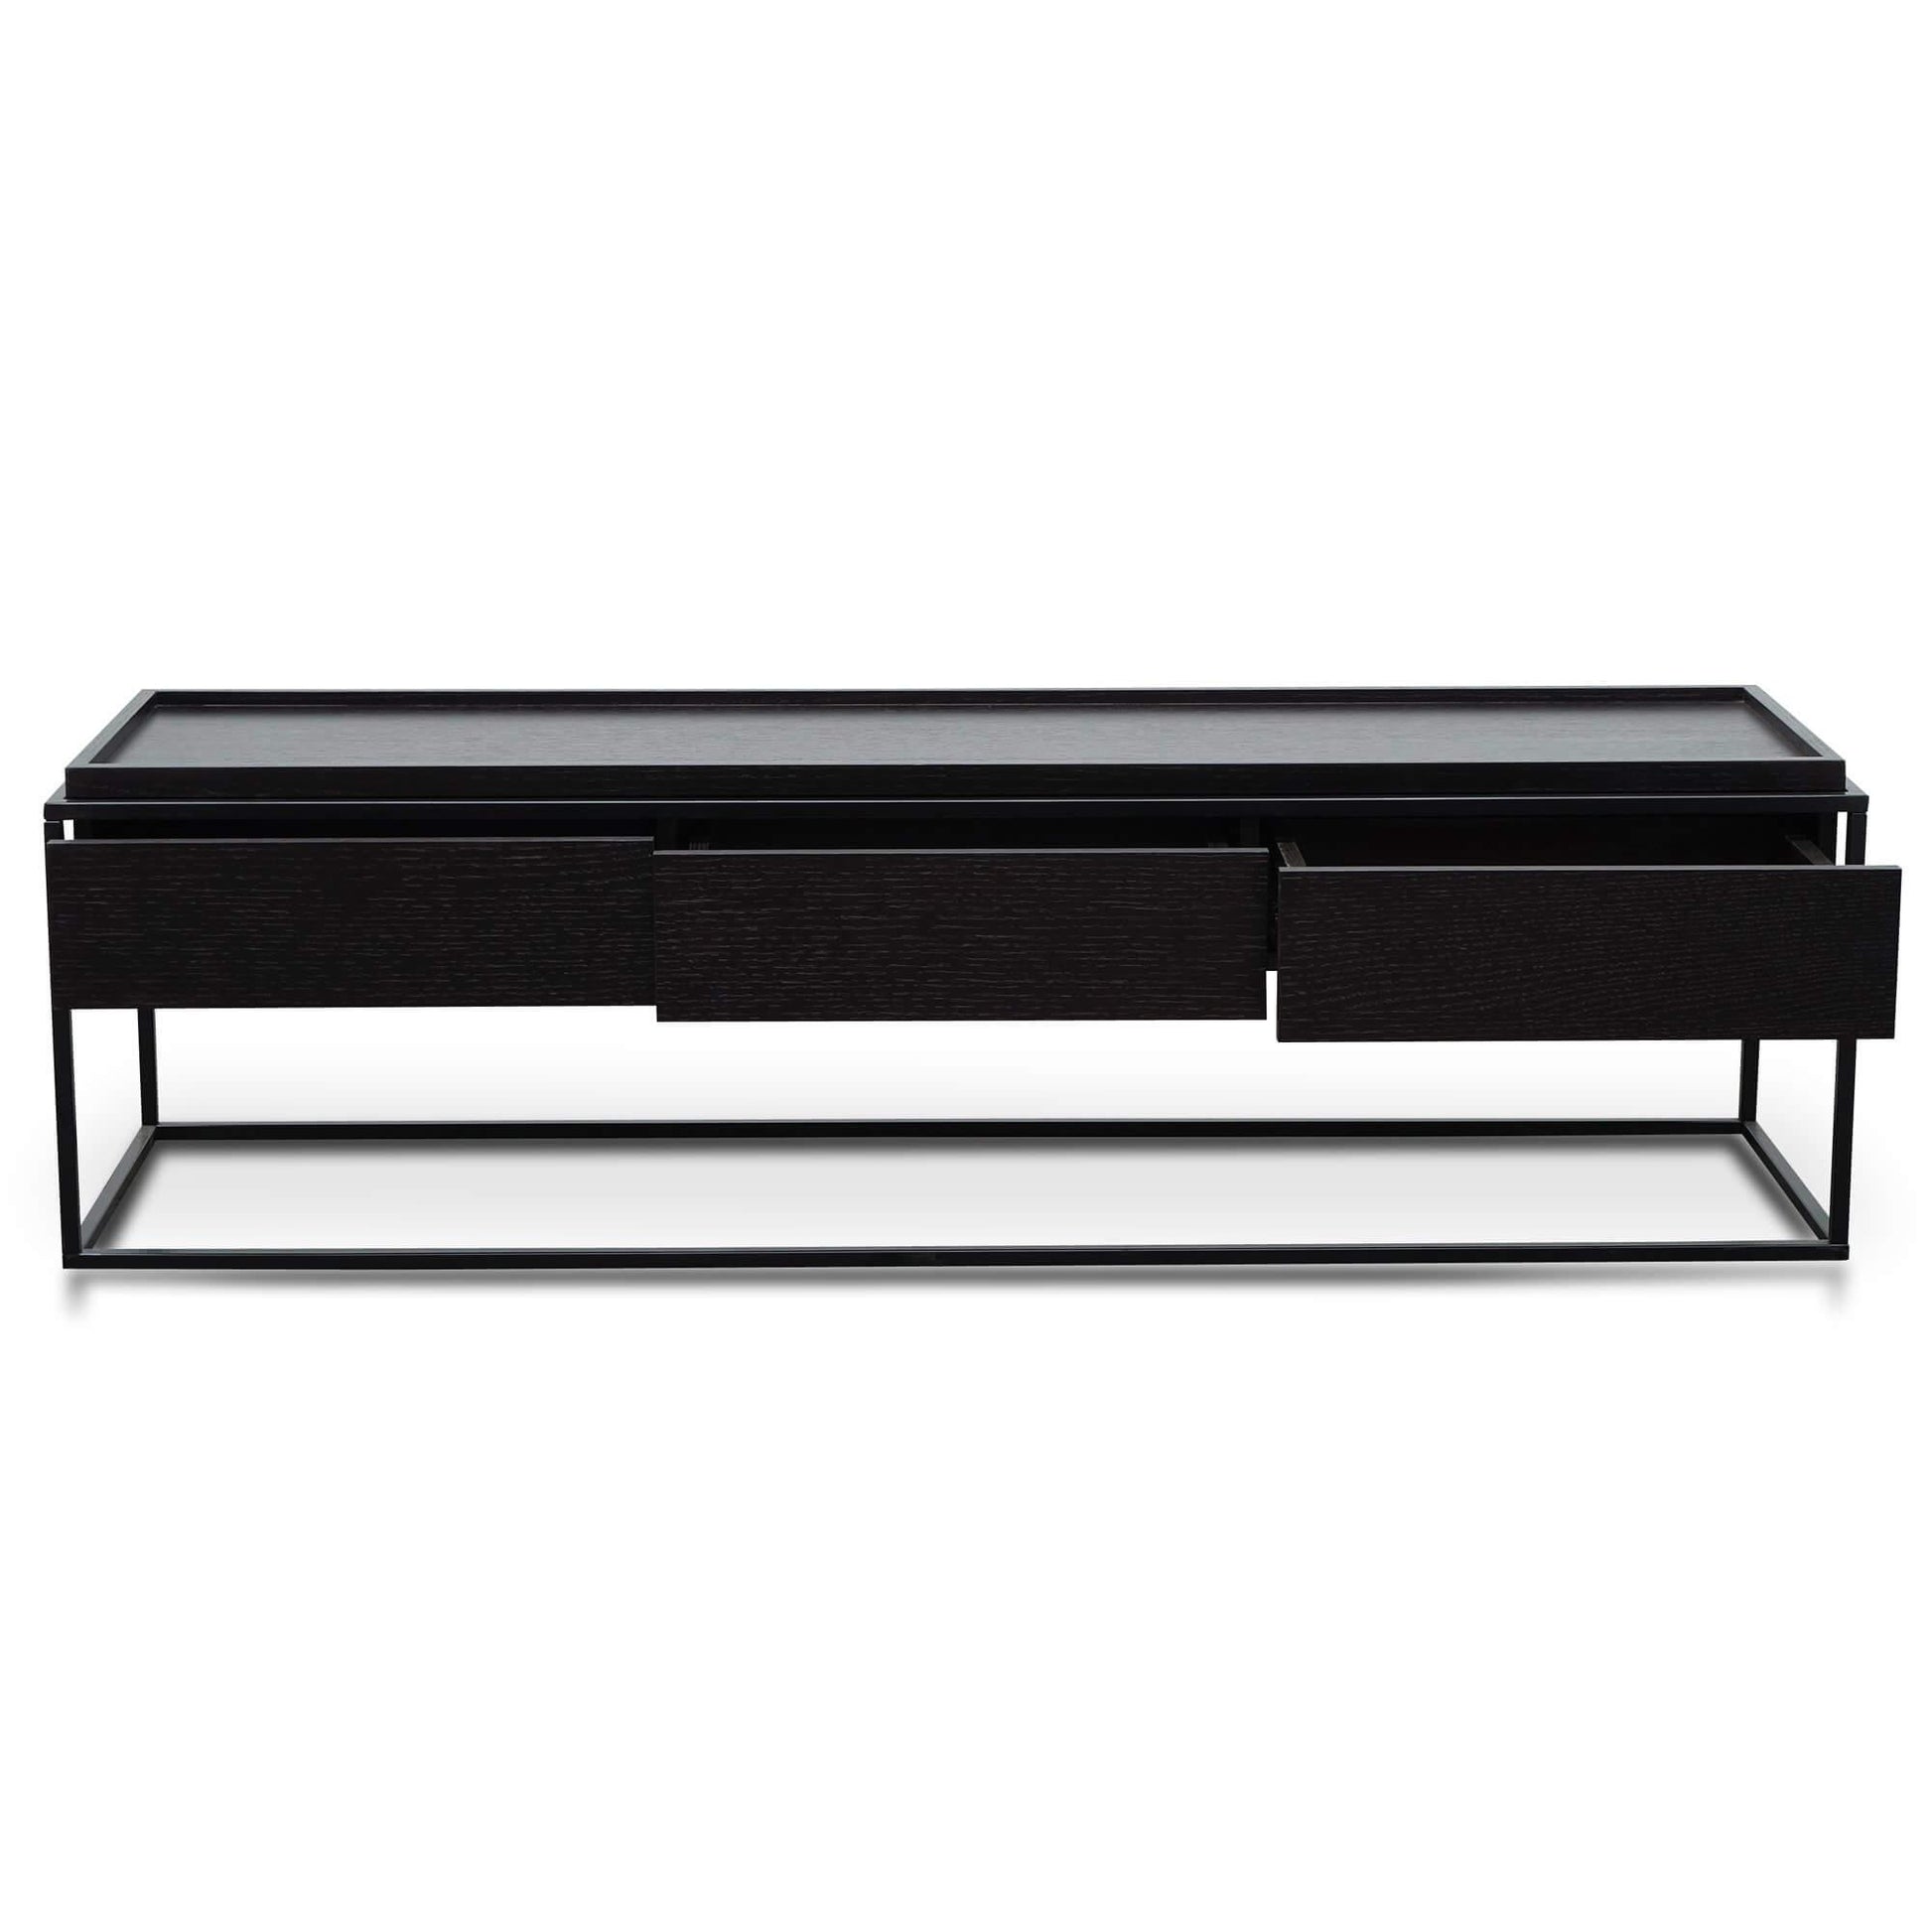 Calibre 150cm TV Entertainment Unit - Full Black TV2712-IG-Entertainment Units-Calibre-Prime Furniture